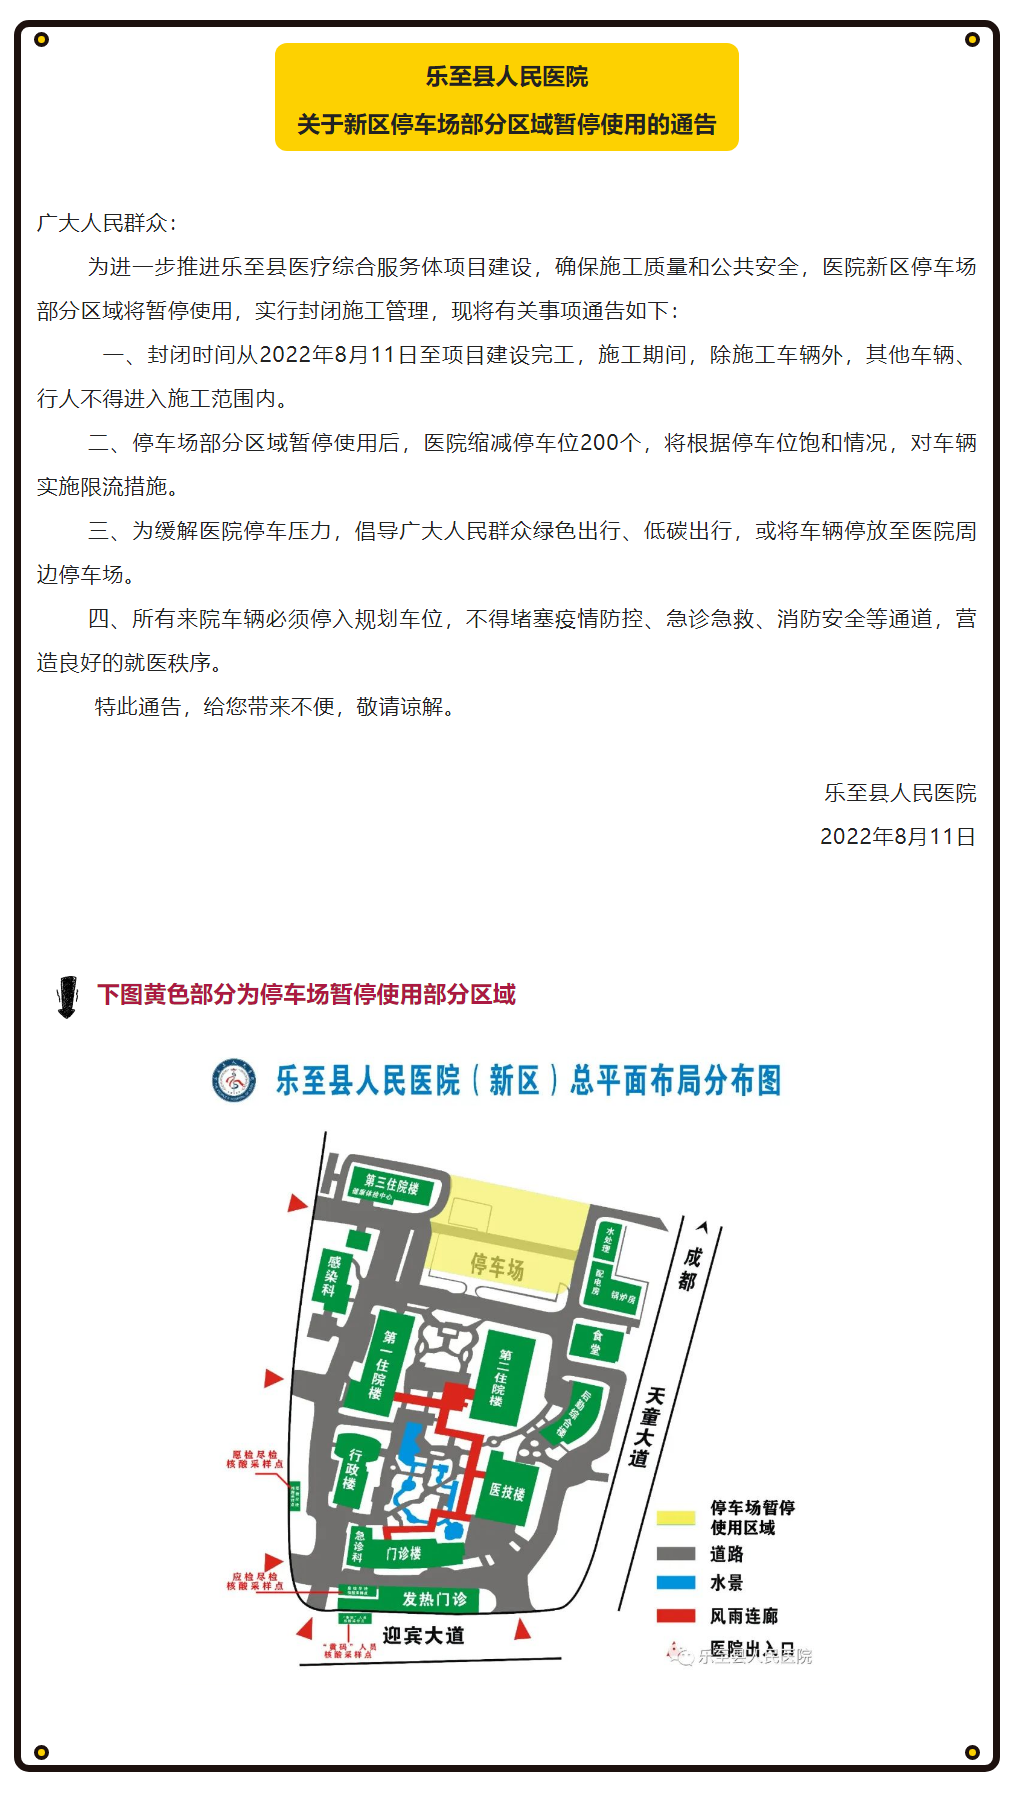 乐至县人民医院关于新区停车场部分区域暂停使用的通告.png